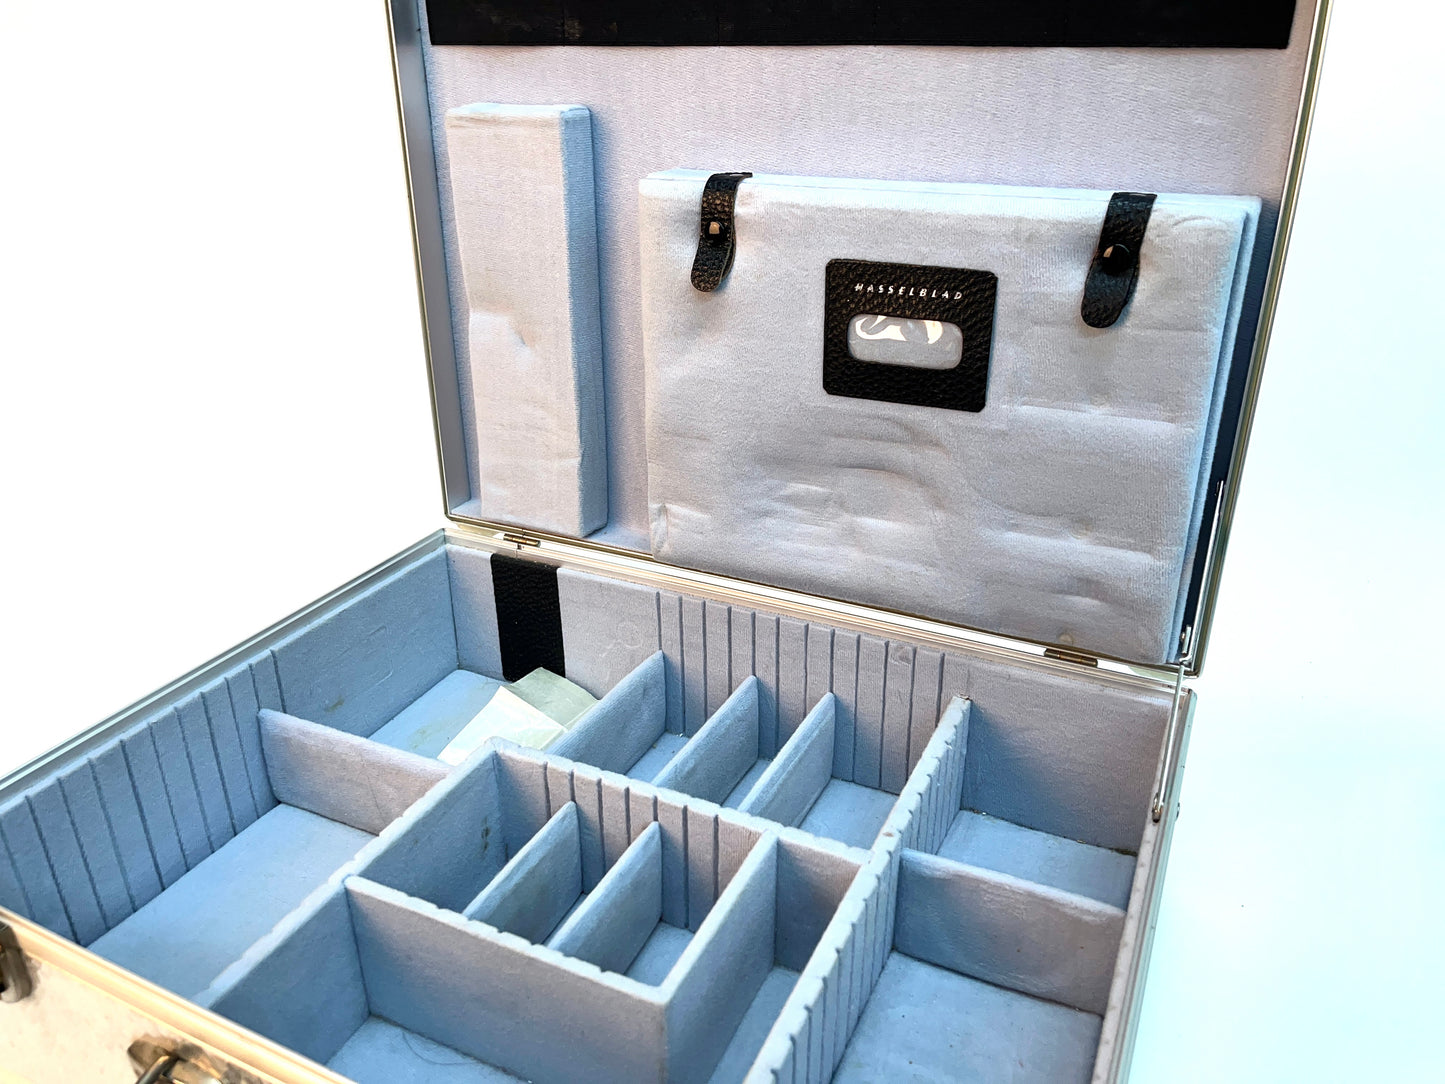 RARE Hasselblad Aluminum Case Briefcase - Mint Condition